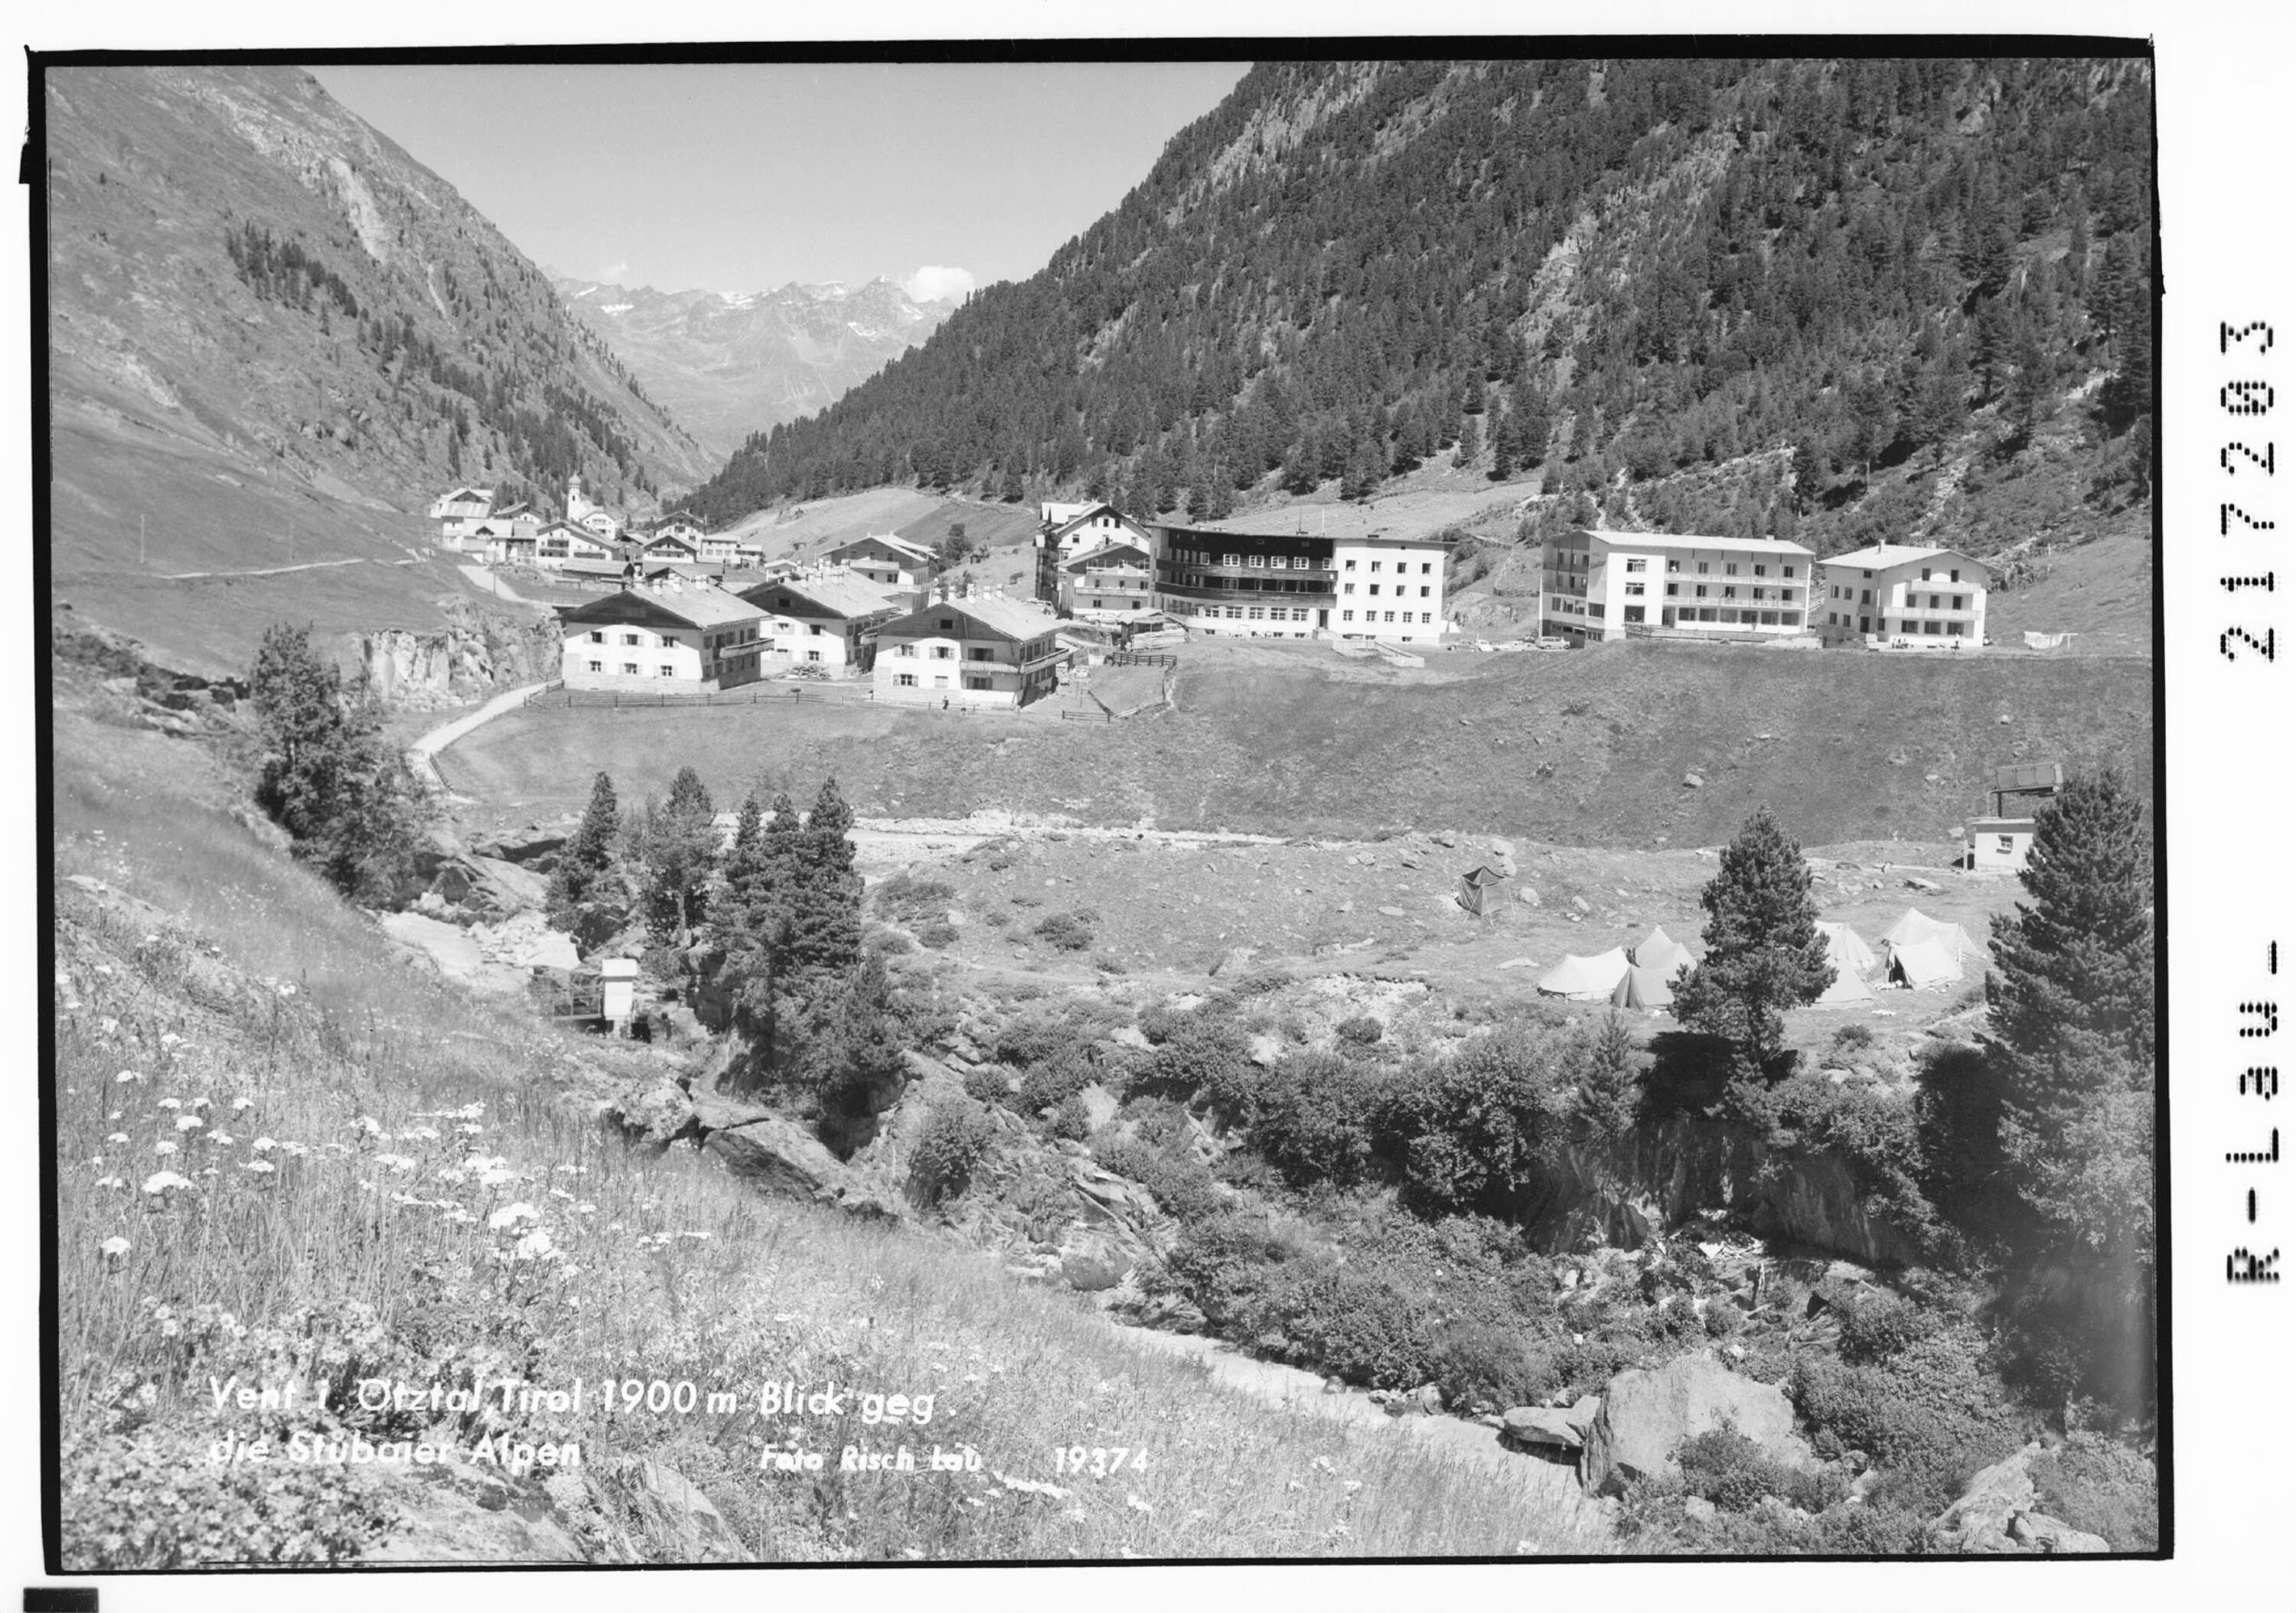 Vent im Ötztal / Tirol 1900 m Blick gegen die Stubaier Alpen></div>


    <hr>
    <div class=